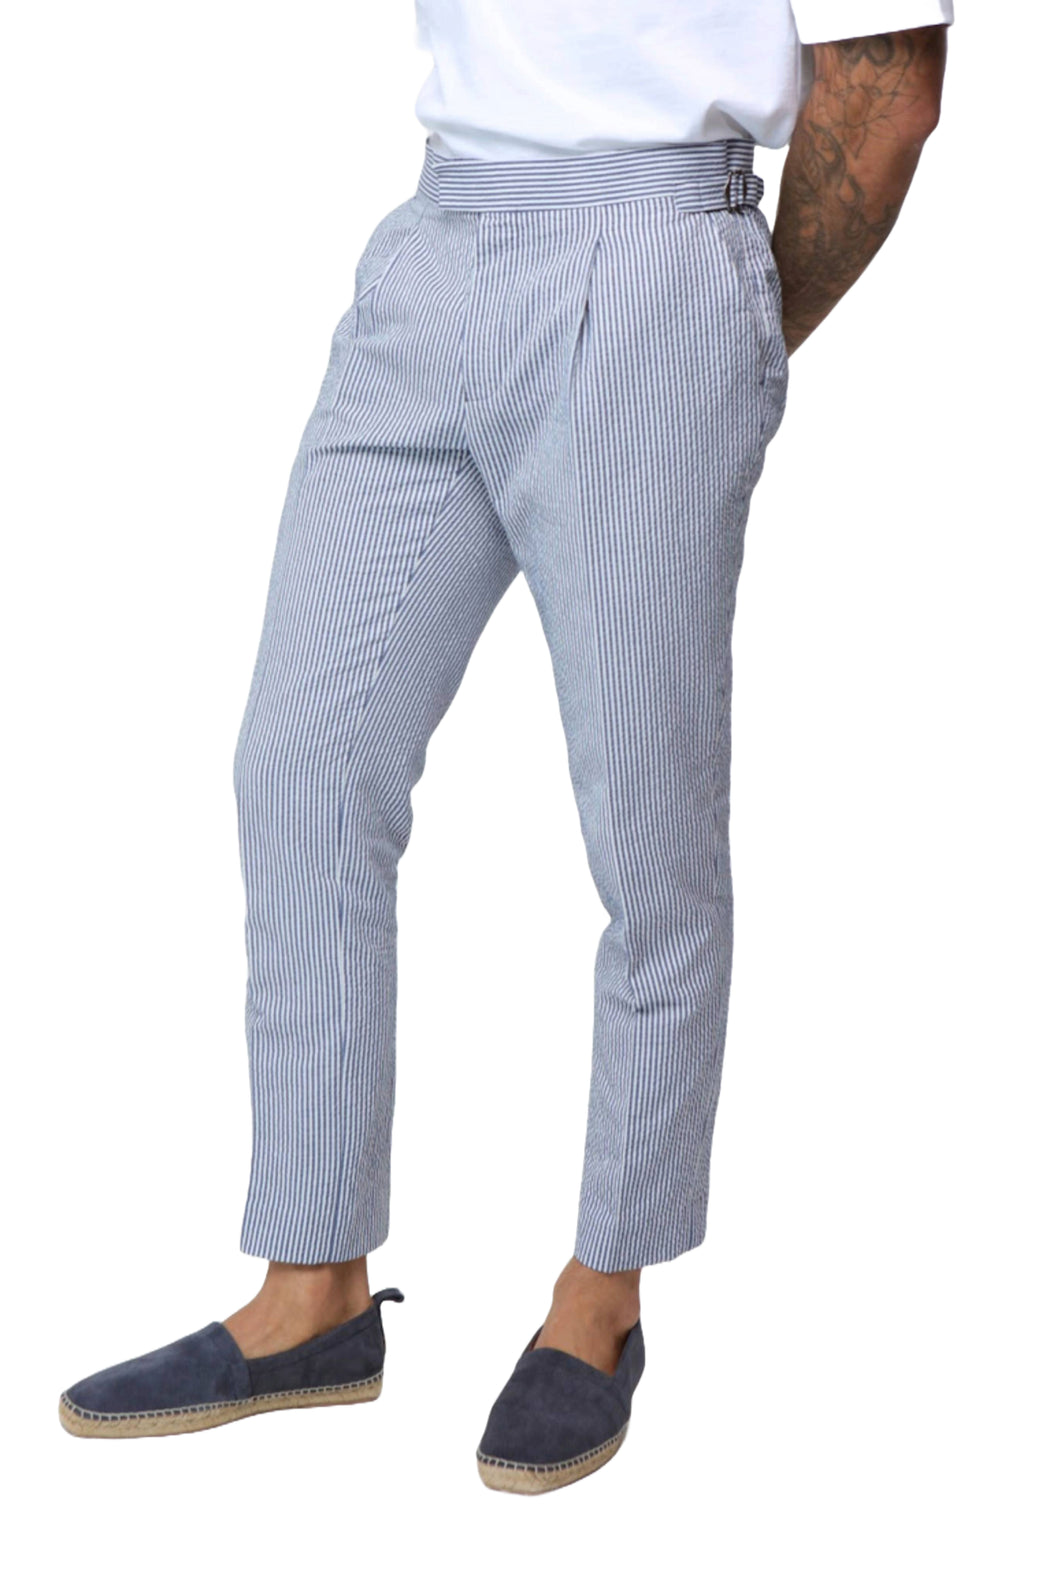 Deakin Cotton Linen Seersucker Trouser Blue Stripe RRP £89